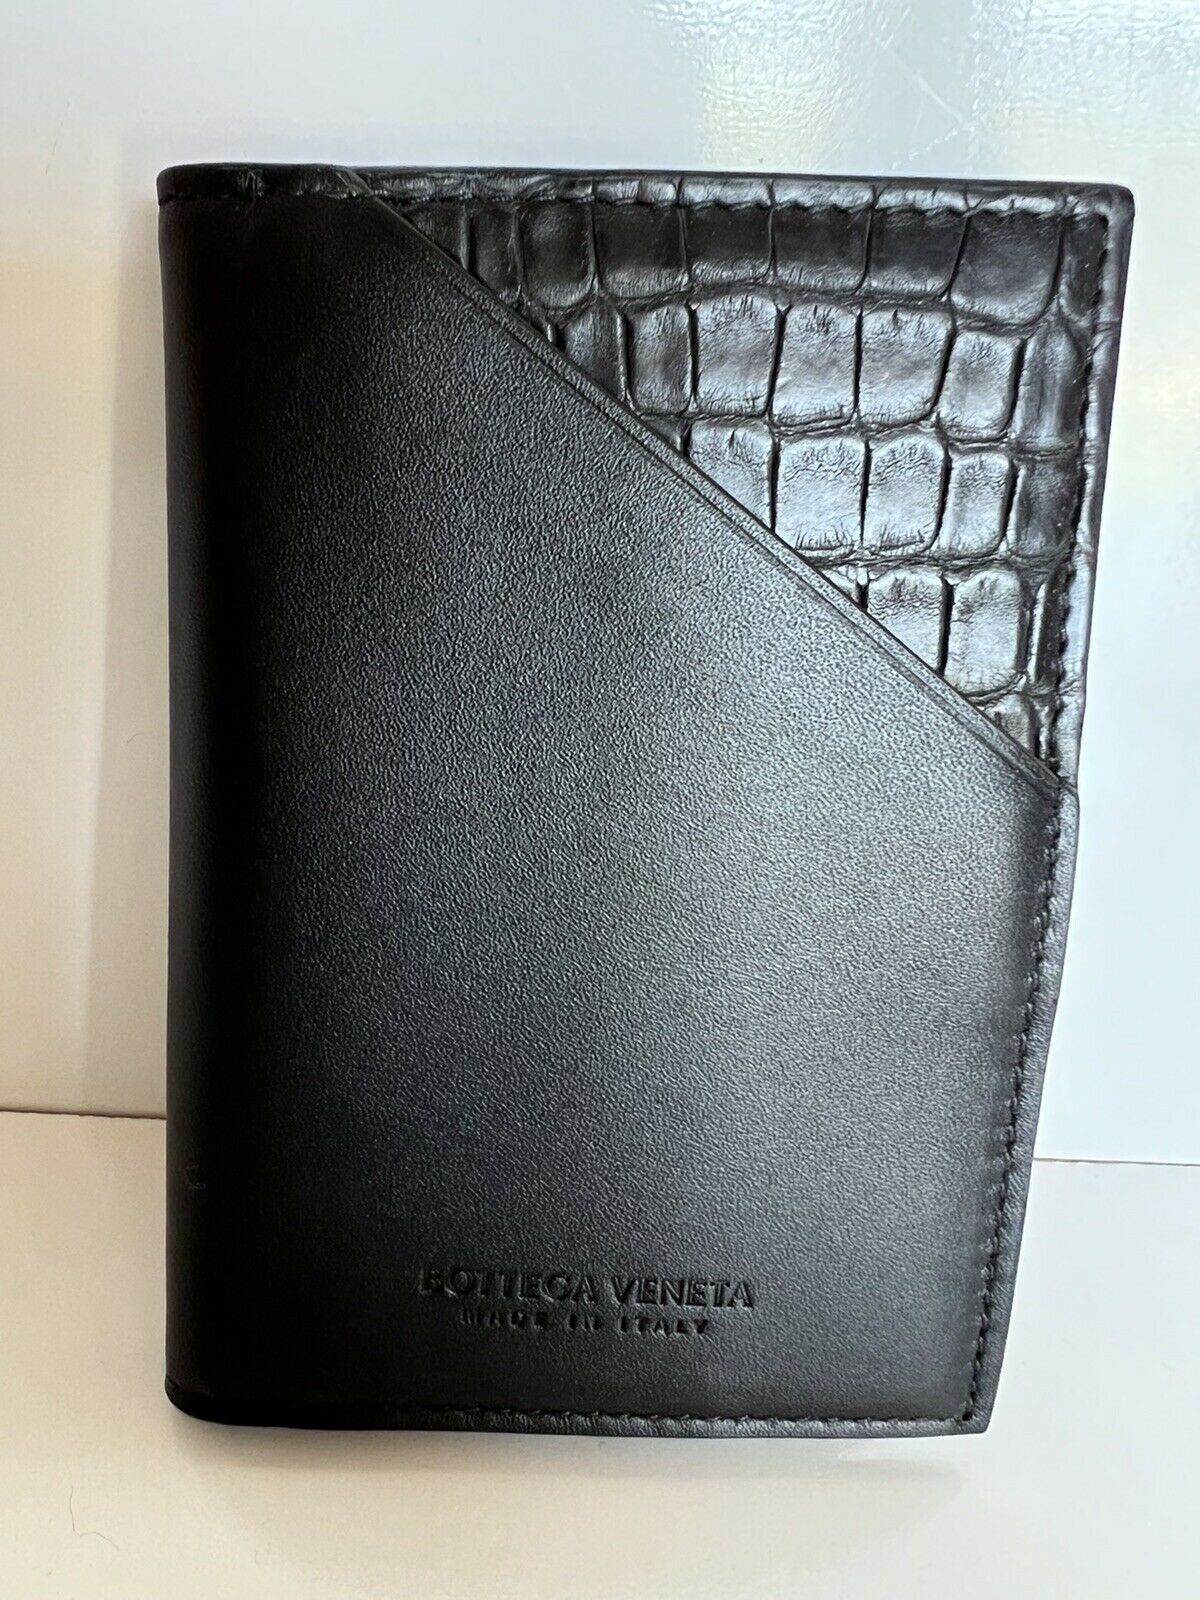 NWT $680 Мужской кошелек Bottega Veneta из кожи аллигатора, черный 619380 Италия 